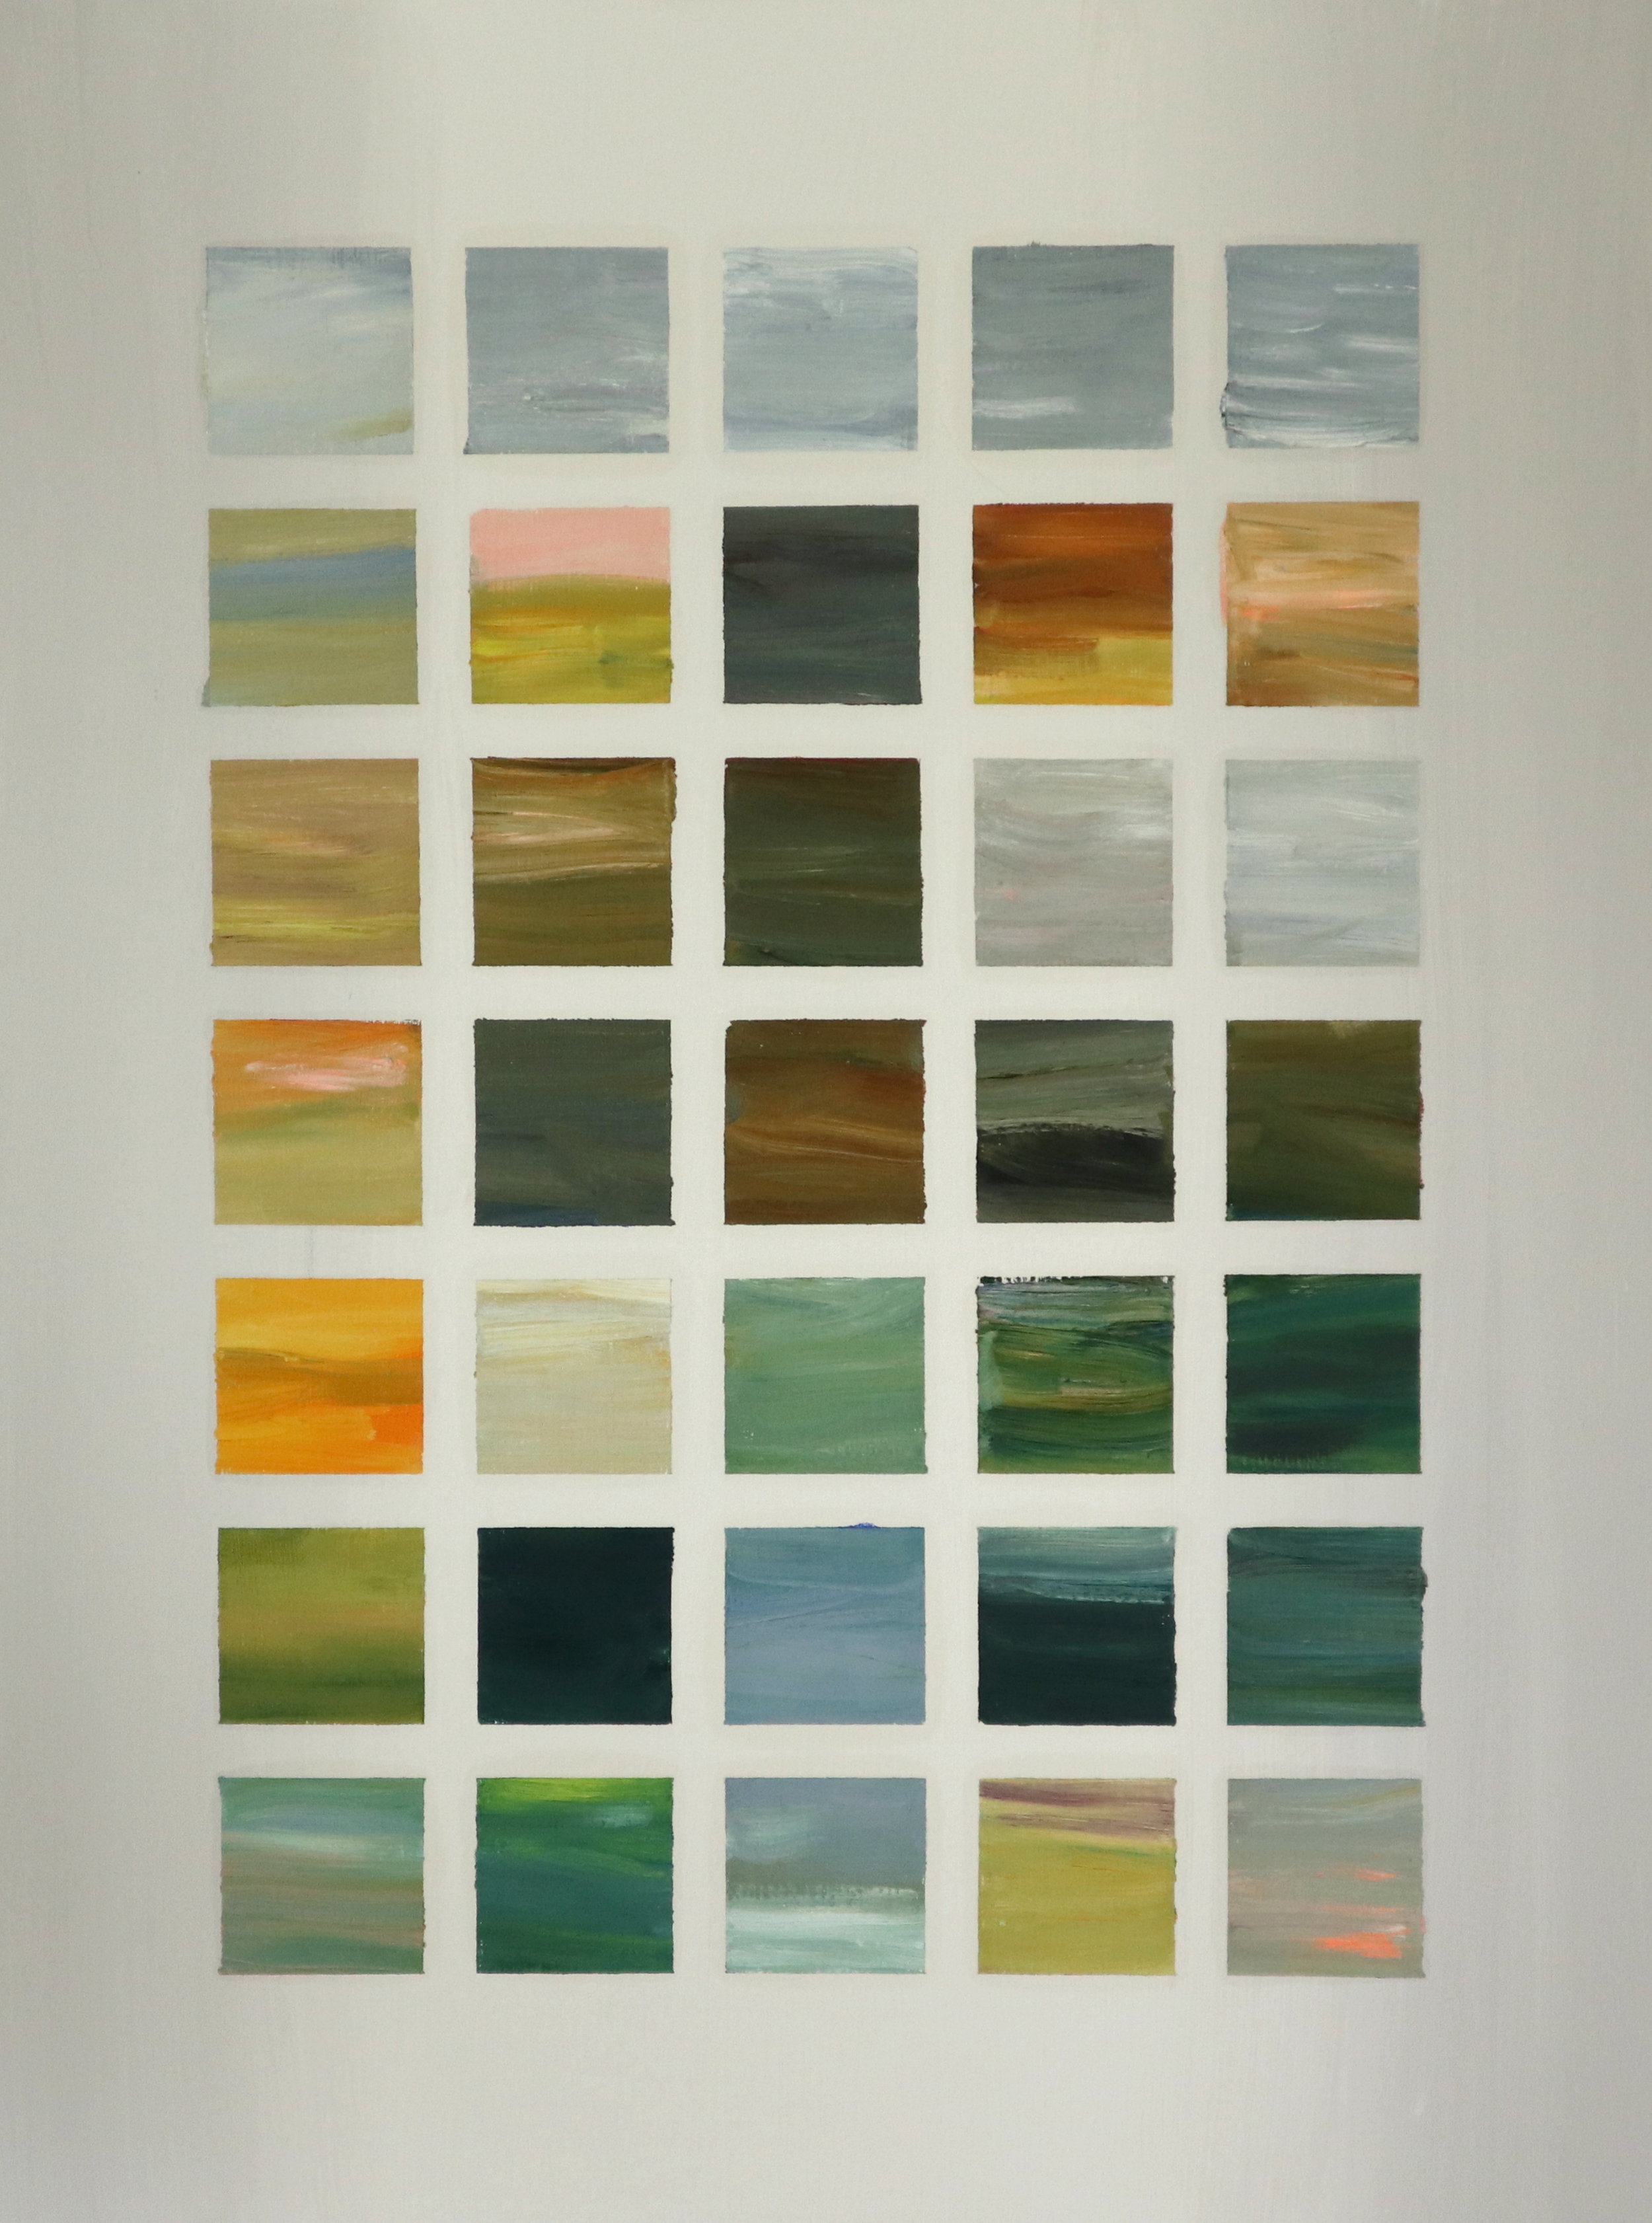   Autumn (Monet)   oil and mixed media on linen  40” x 30”  2019   